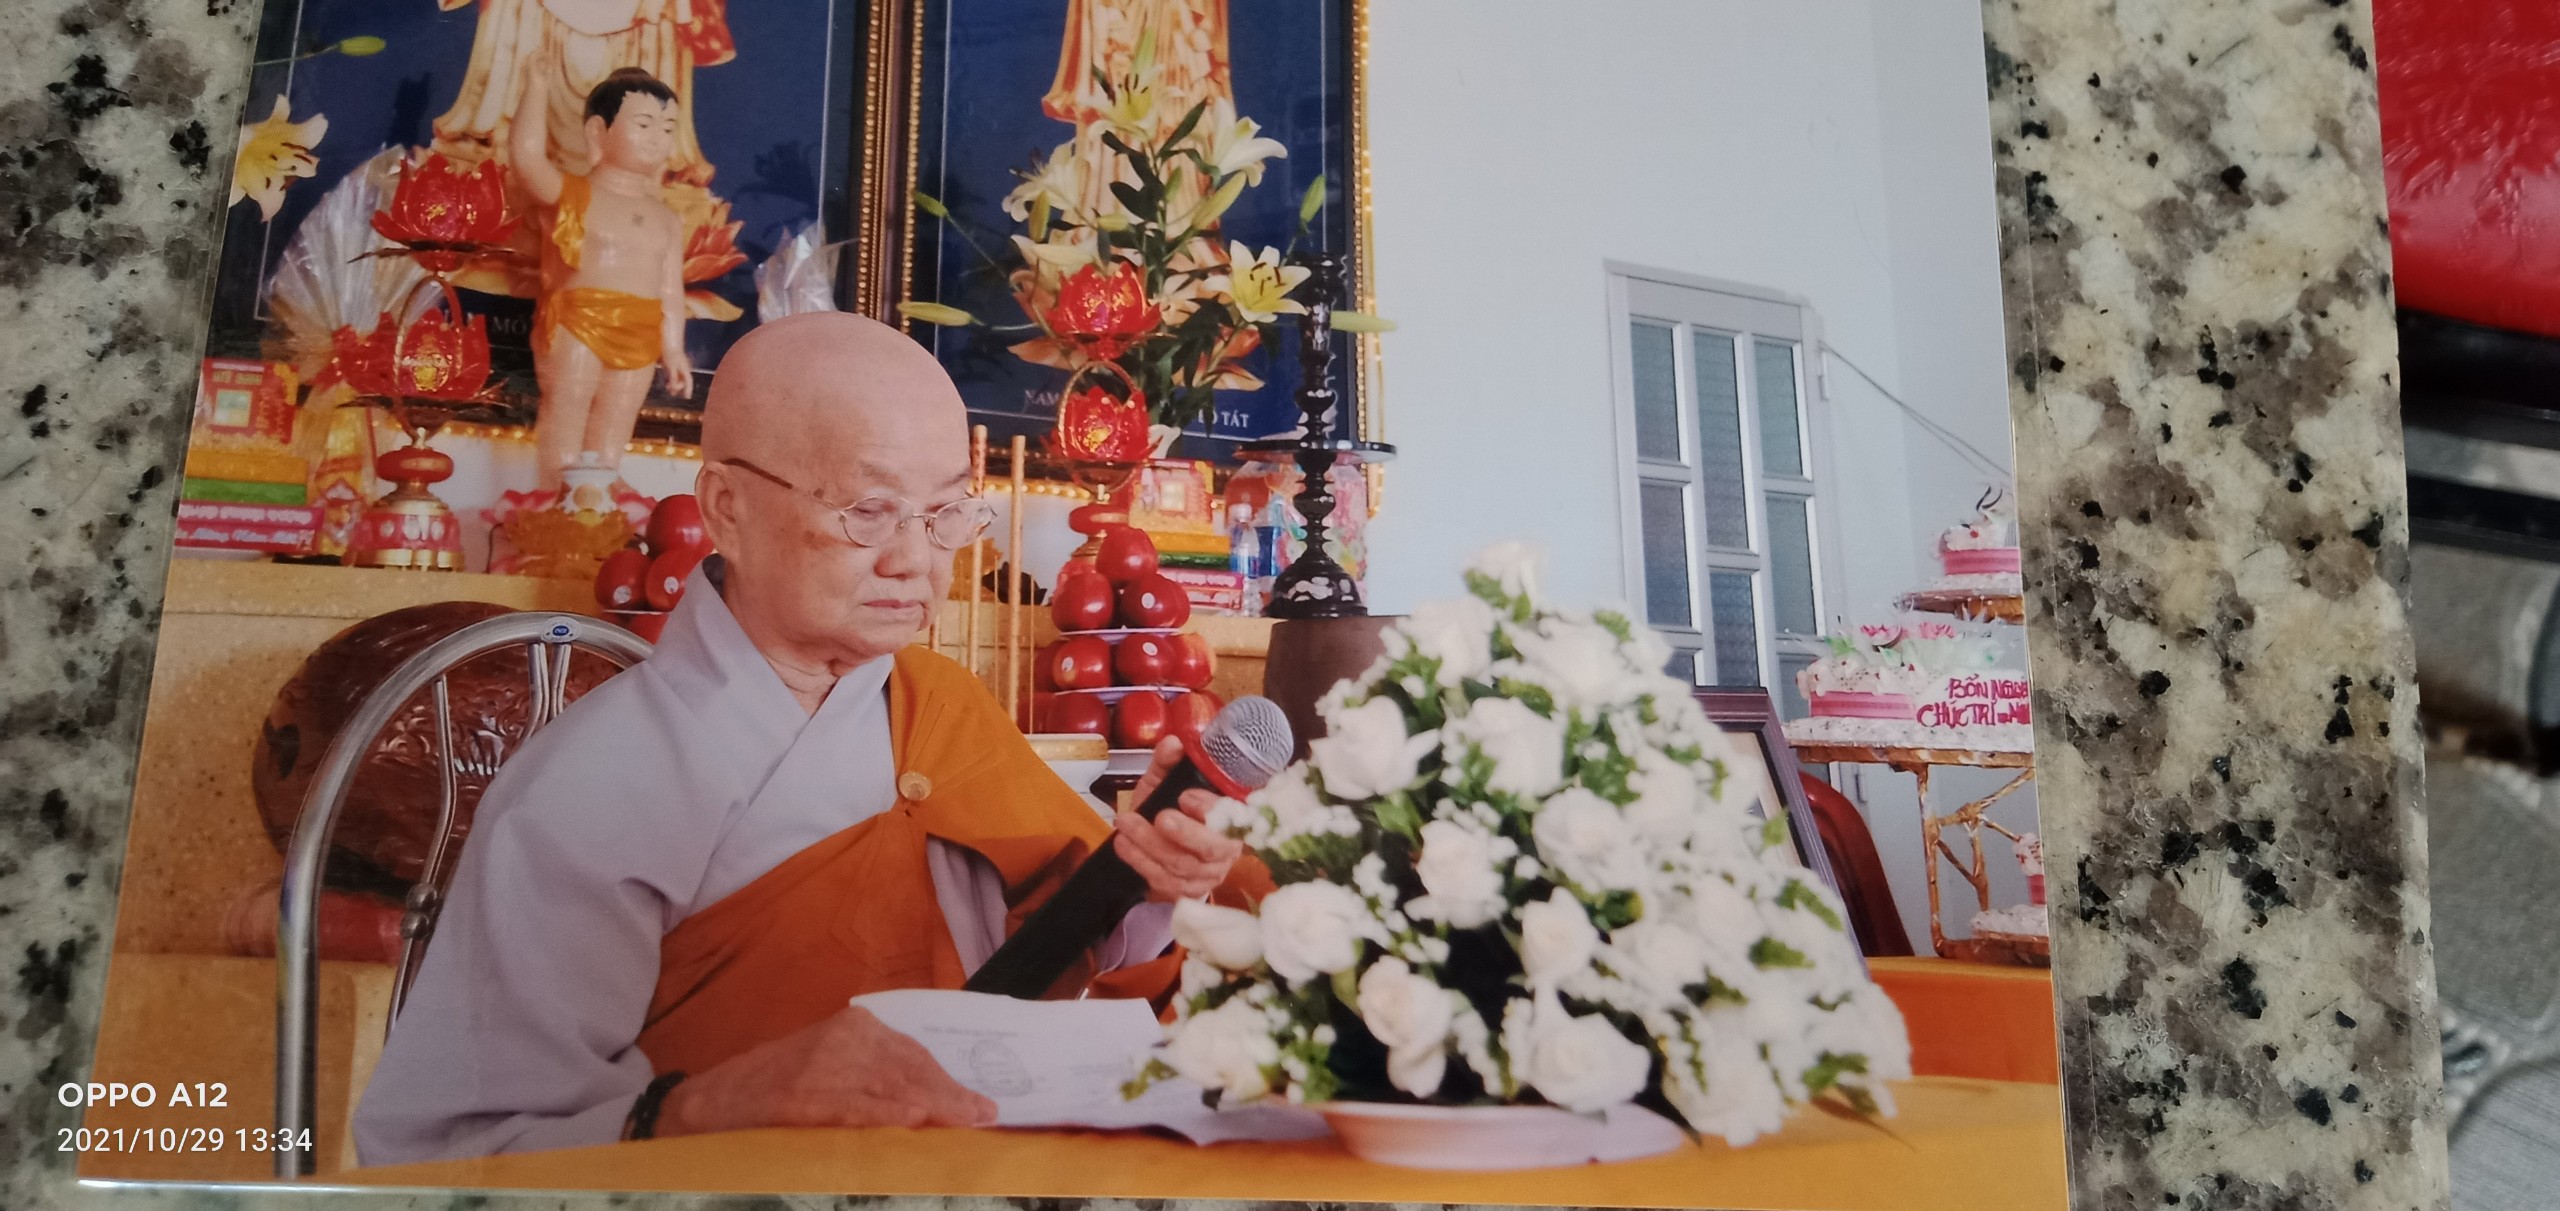 Liên Duyên Ni Sư Thích Nữ Thục Nhựt viên tịch ở tuổi 85, trụ trì chùa Quảng Hương viên tịch